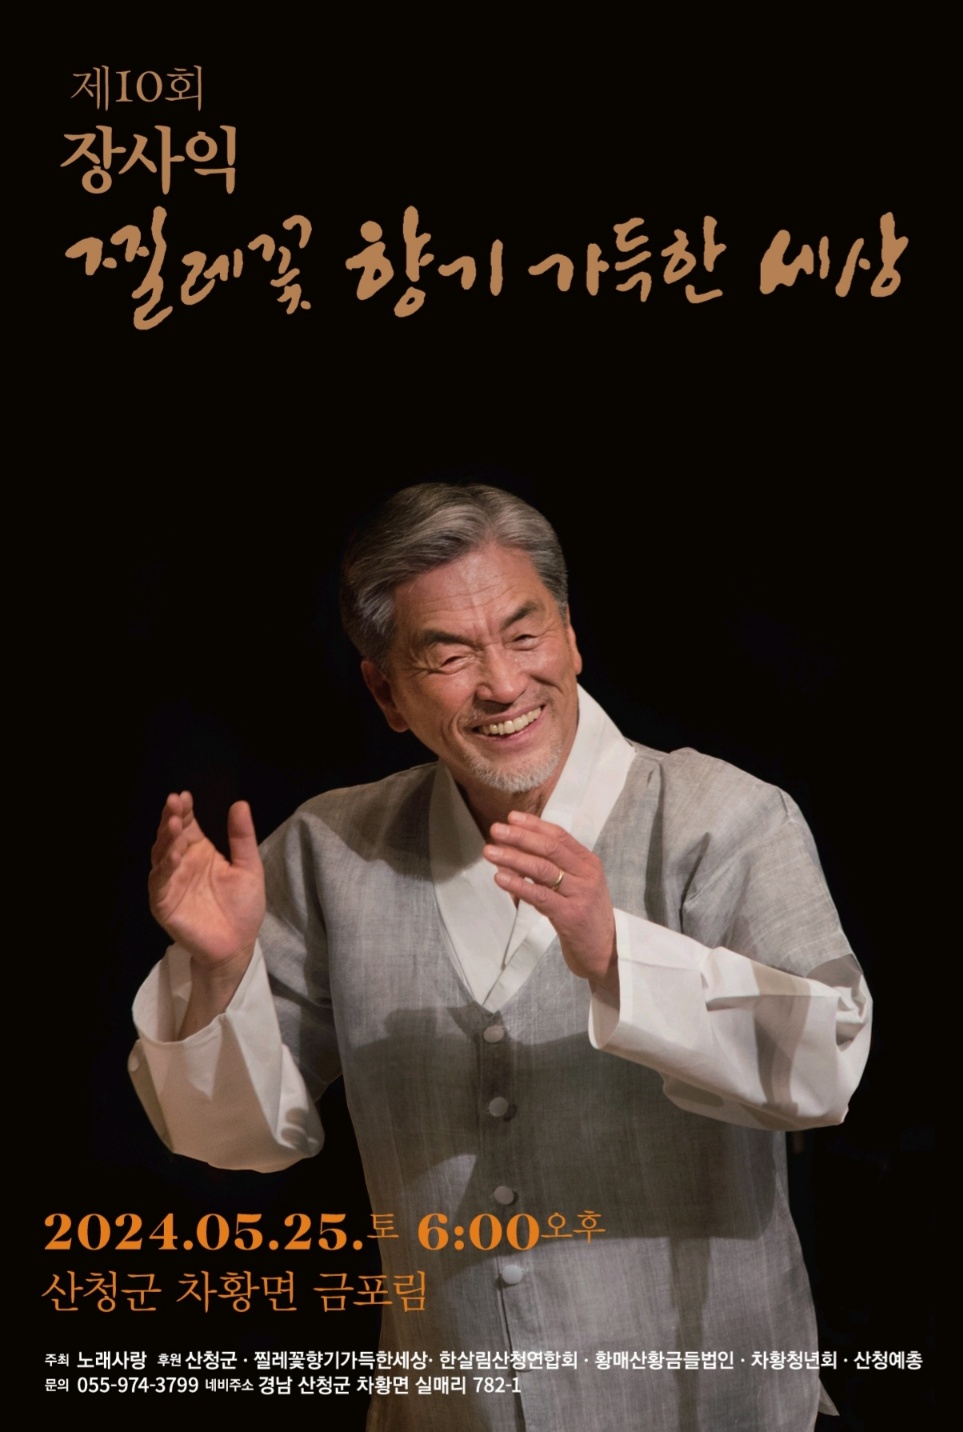 제10회 장사익 찔레꽃 음악회 개최 안내 1